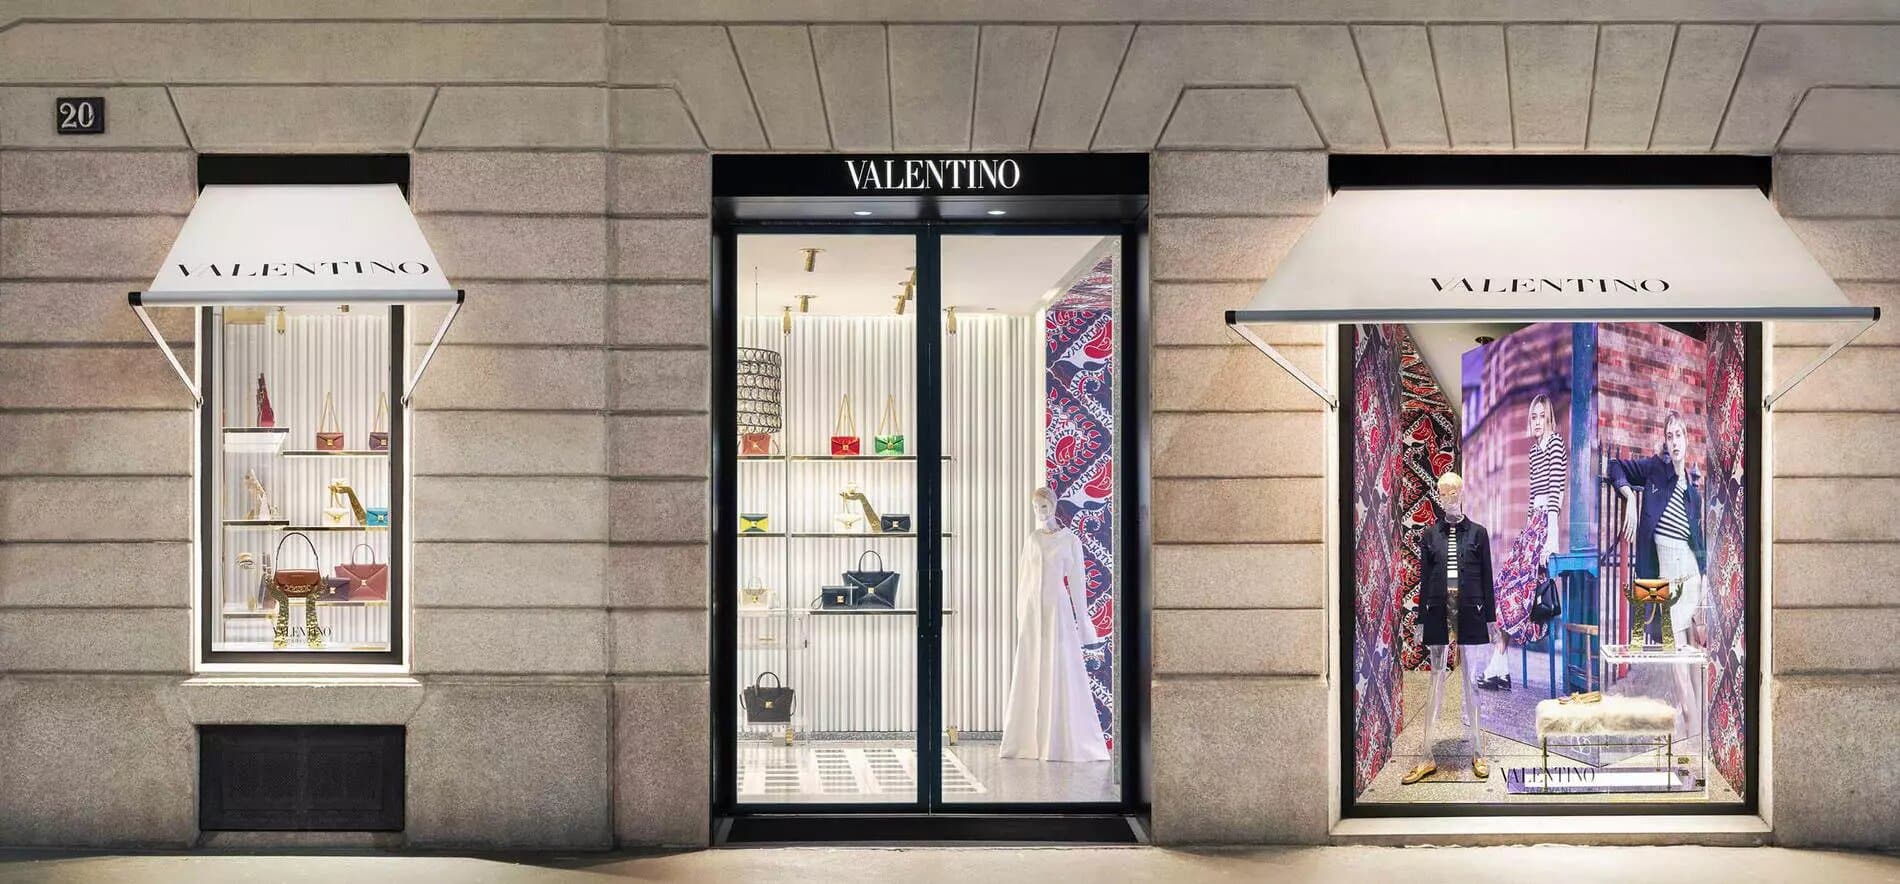 Louis Vuitton allie art et technologie dans ses vitrines